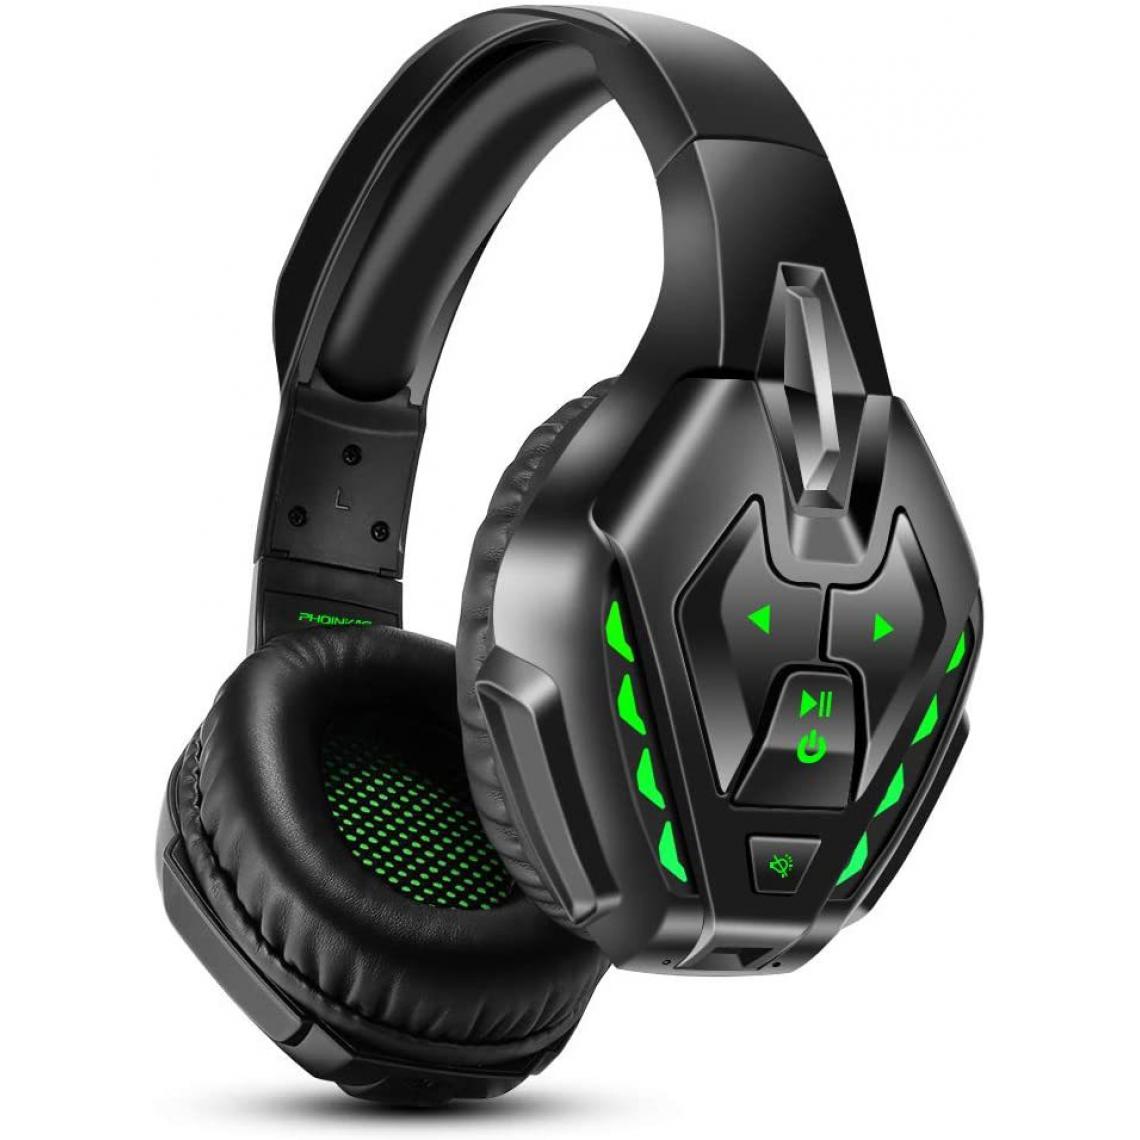 Chrono - Casque de jeu pour Xbox One, casque sans fil Bluetooth pour la musique, casque de jeu filaire pour PS4, PS5, PC, commutateur Nintendo avec micro antibruit et surround de basses 7.1, lumière LED(vert) - Casques de réalité virtuelle